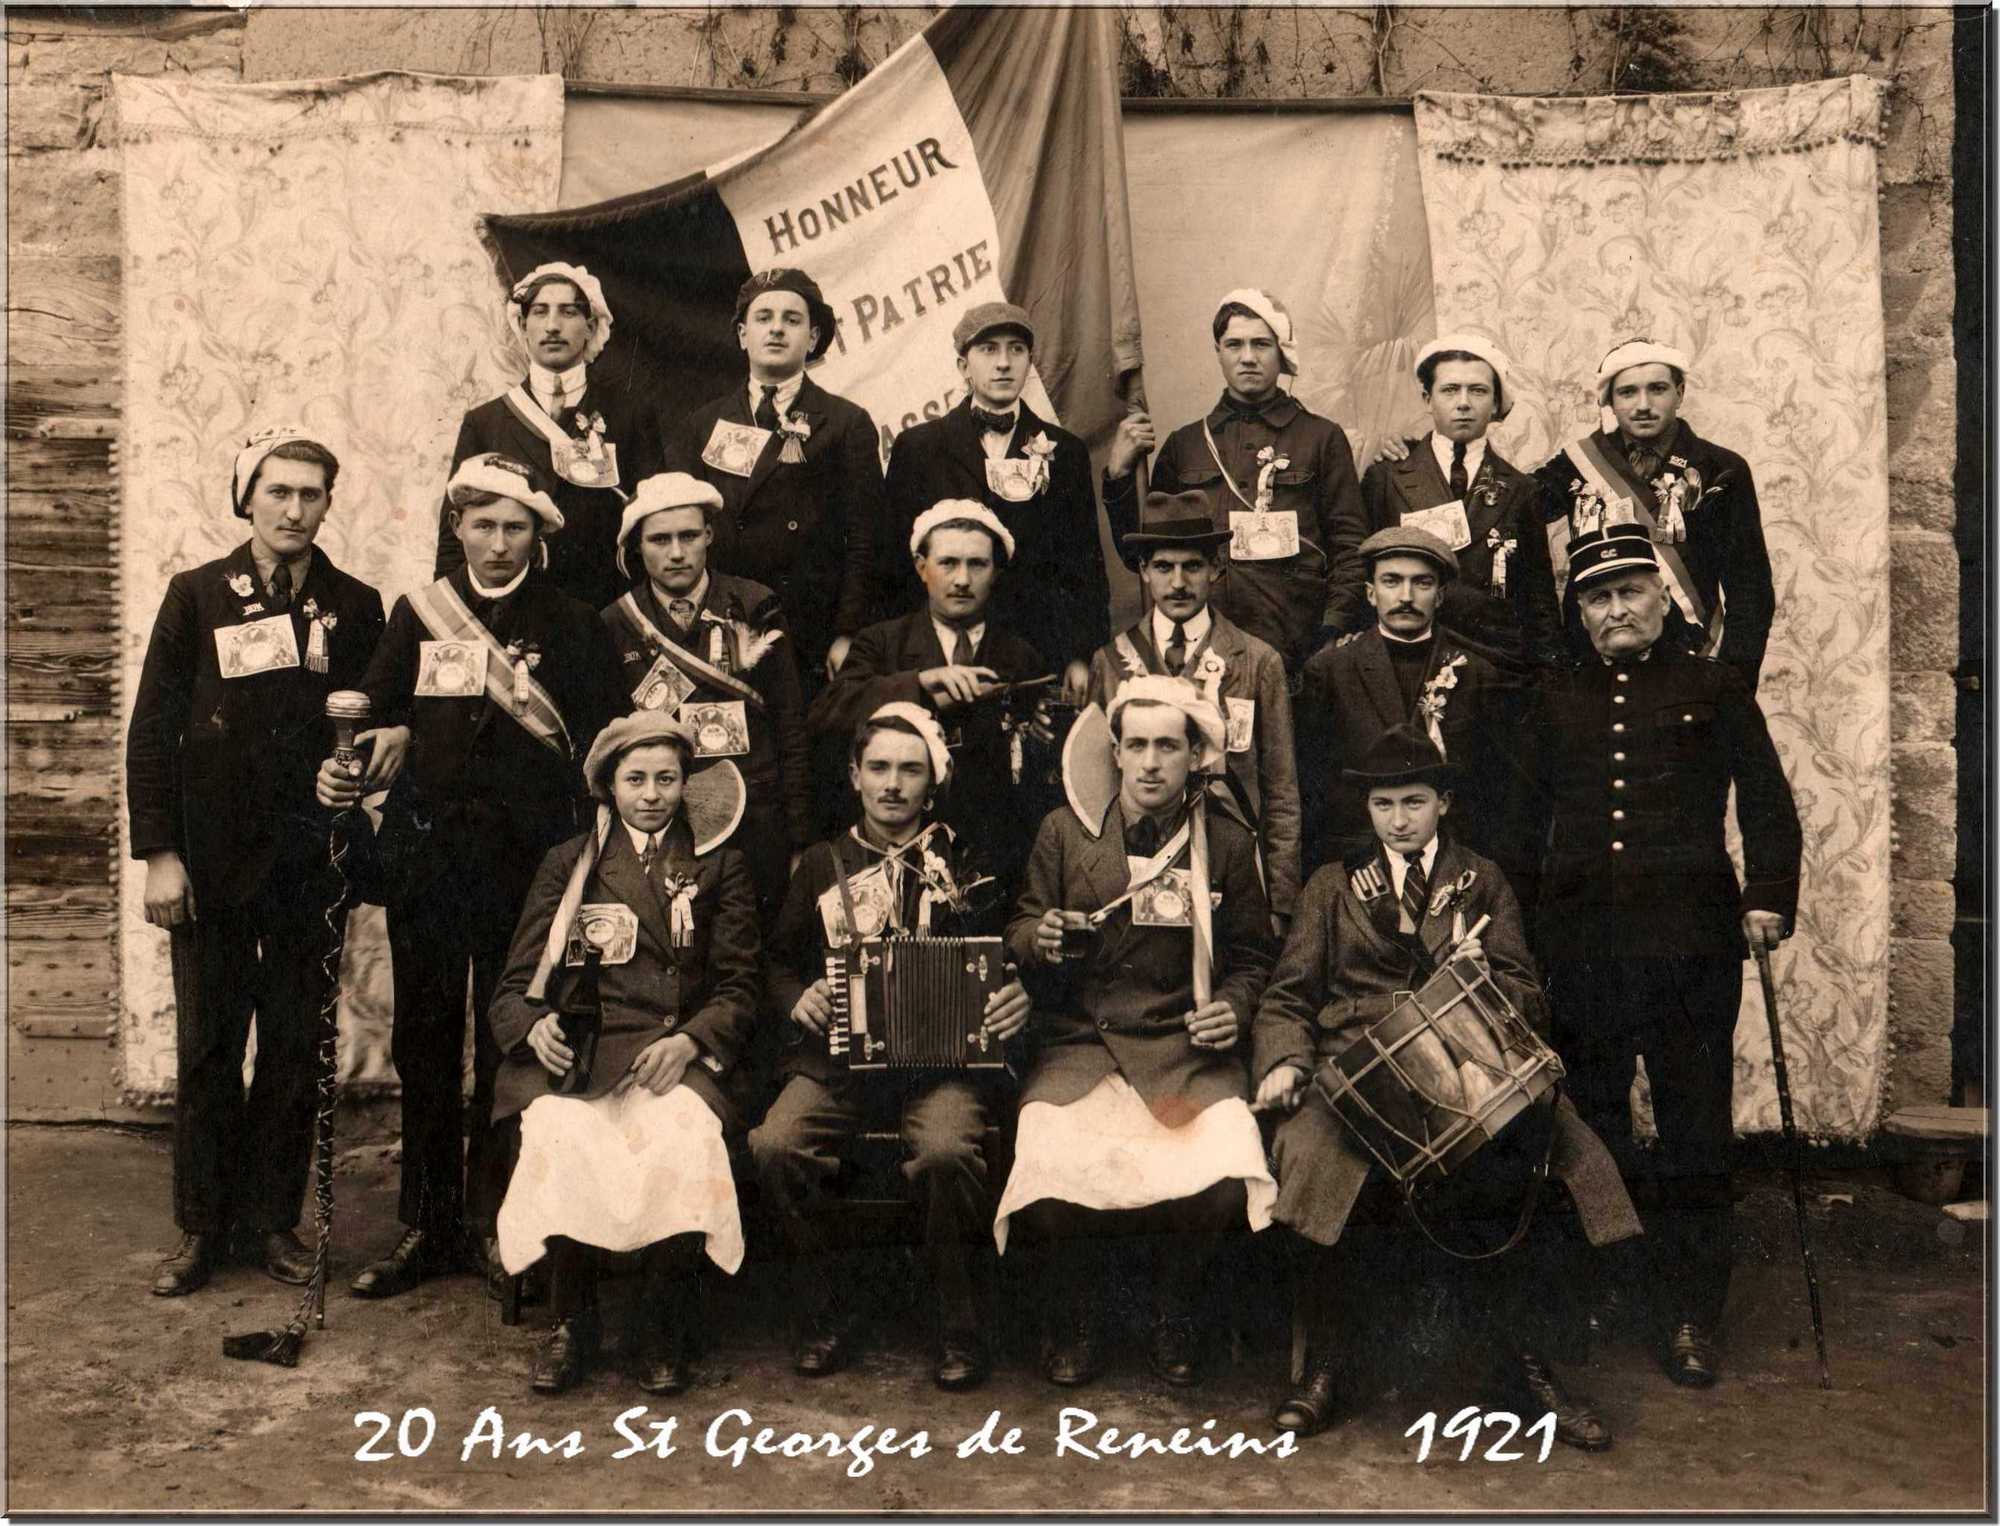 20_ans_st_georges_de_reneins_1921